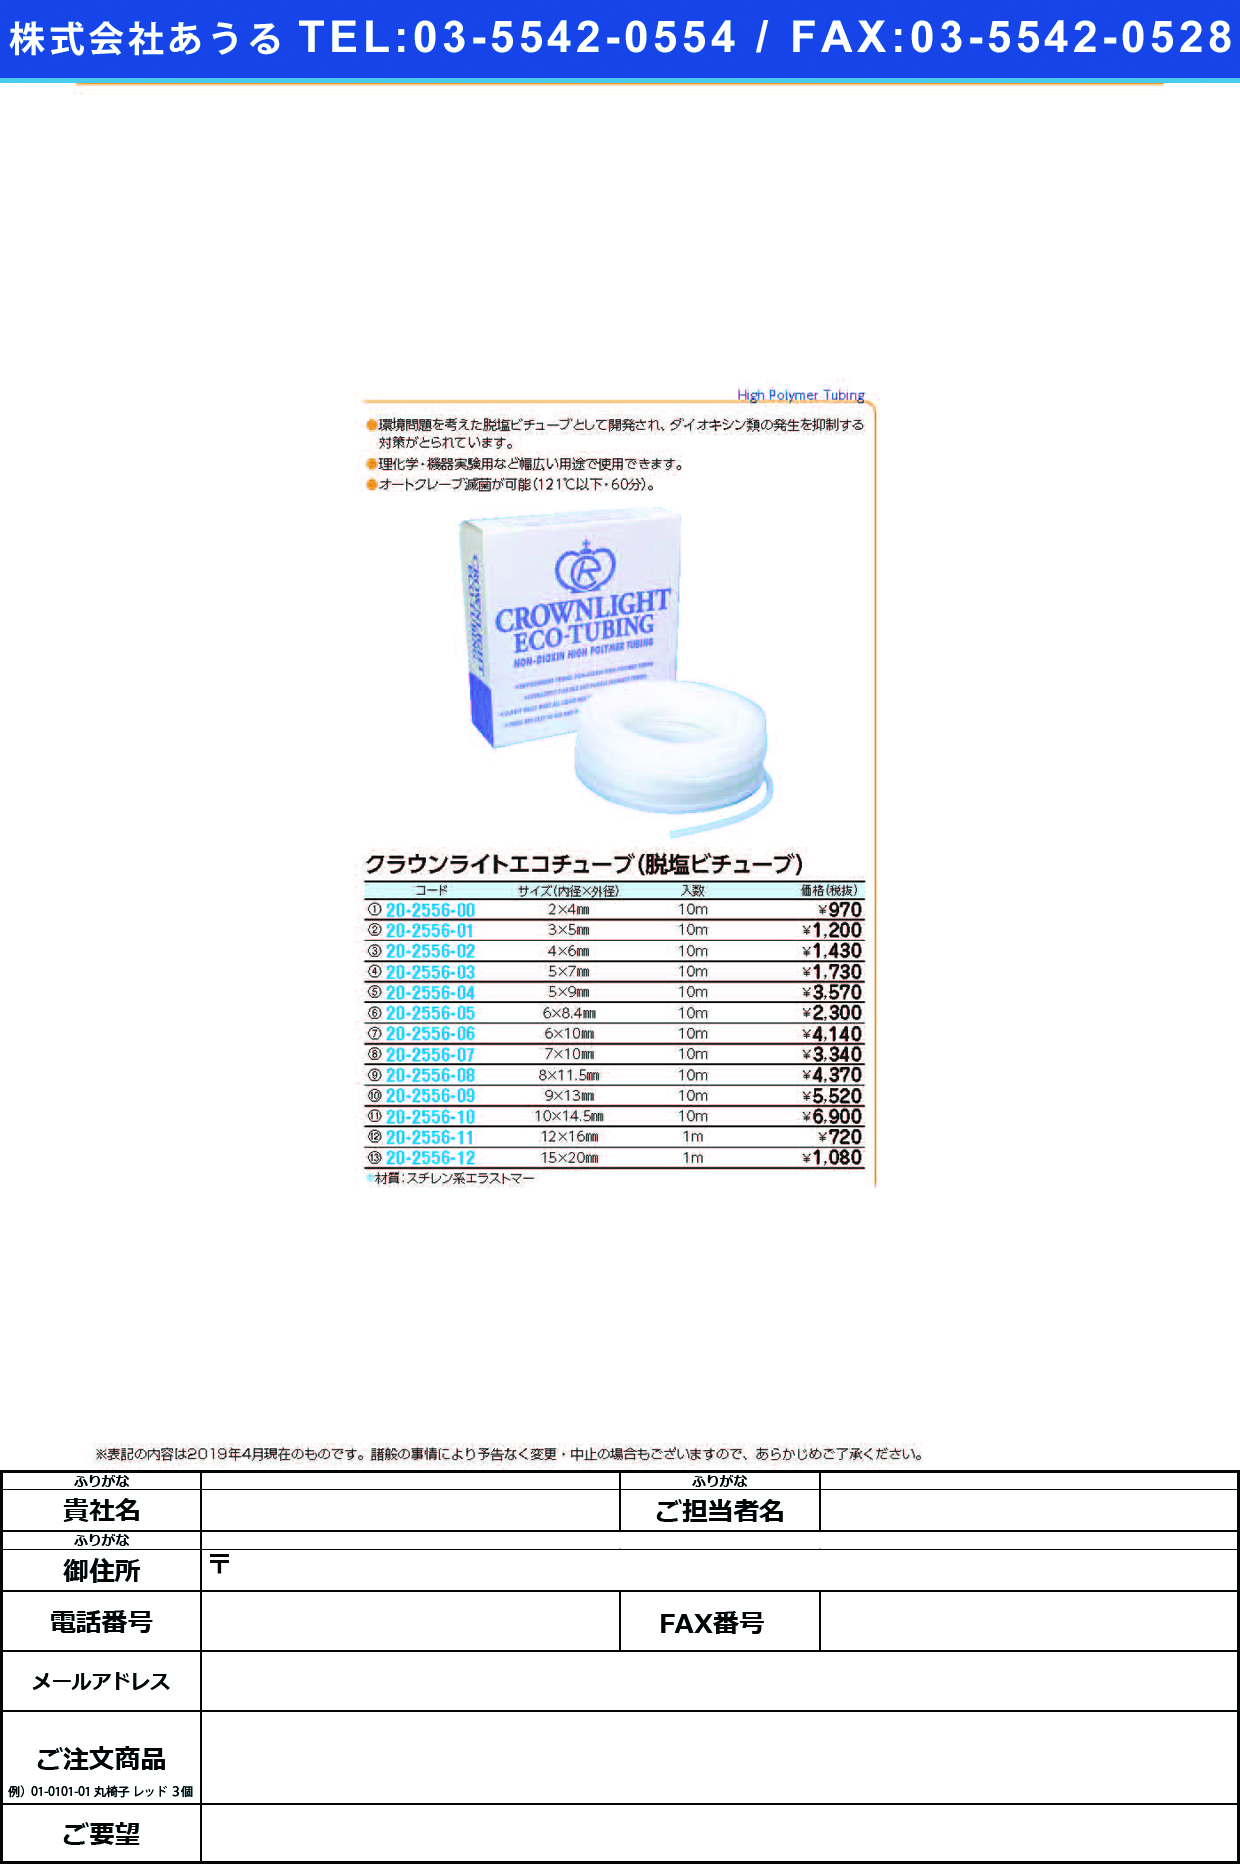 (20-2556-02)クラウンライトエコチューブ 4.0X6.0(10Mｲﾘ) ｸﾗｳﾝﾗｲﾄｴｺﾁｭｰﾌﾞ【1袋単位】【2019年カタログ商品】